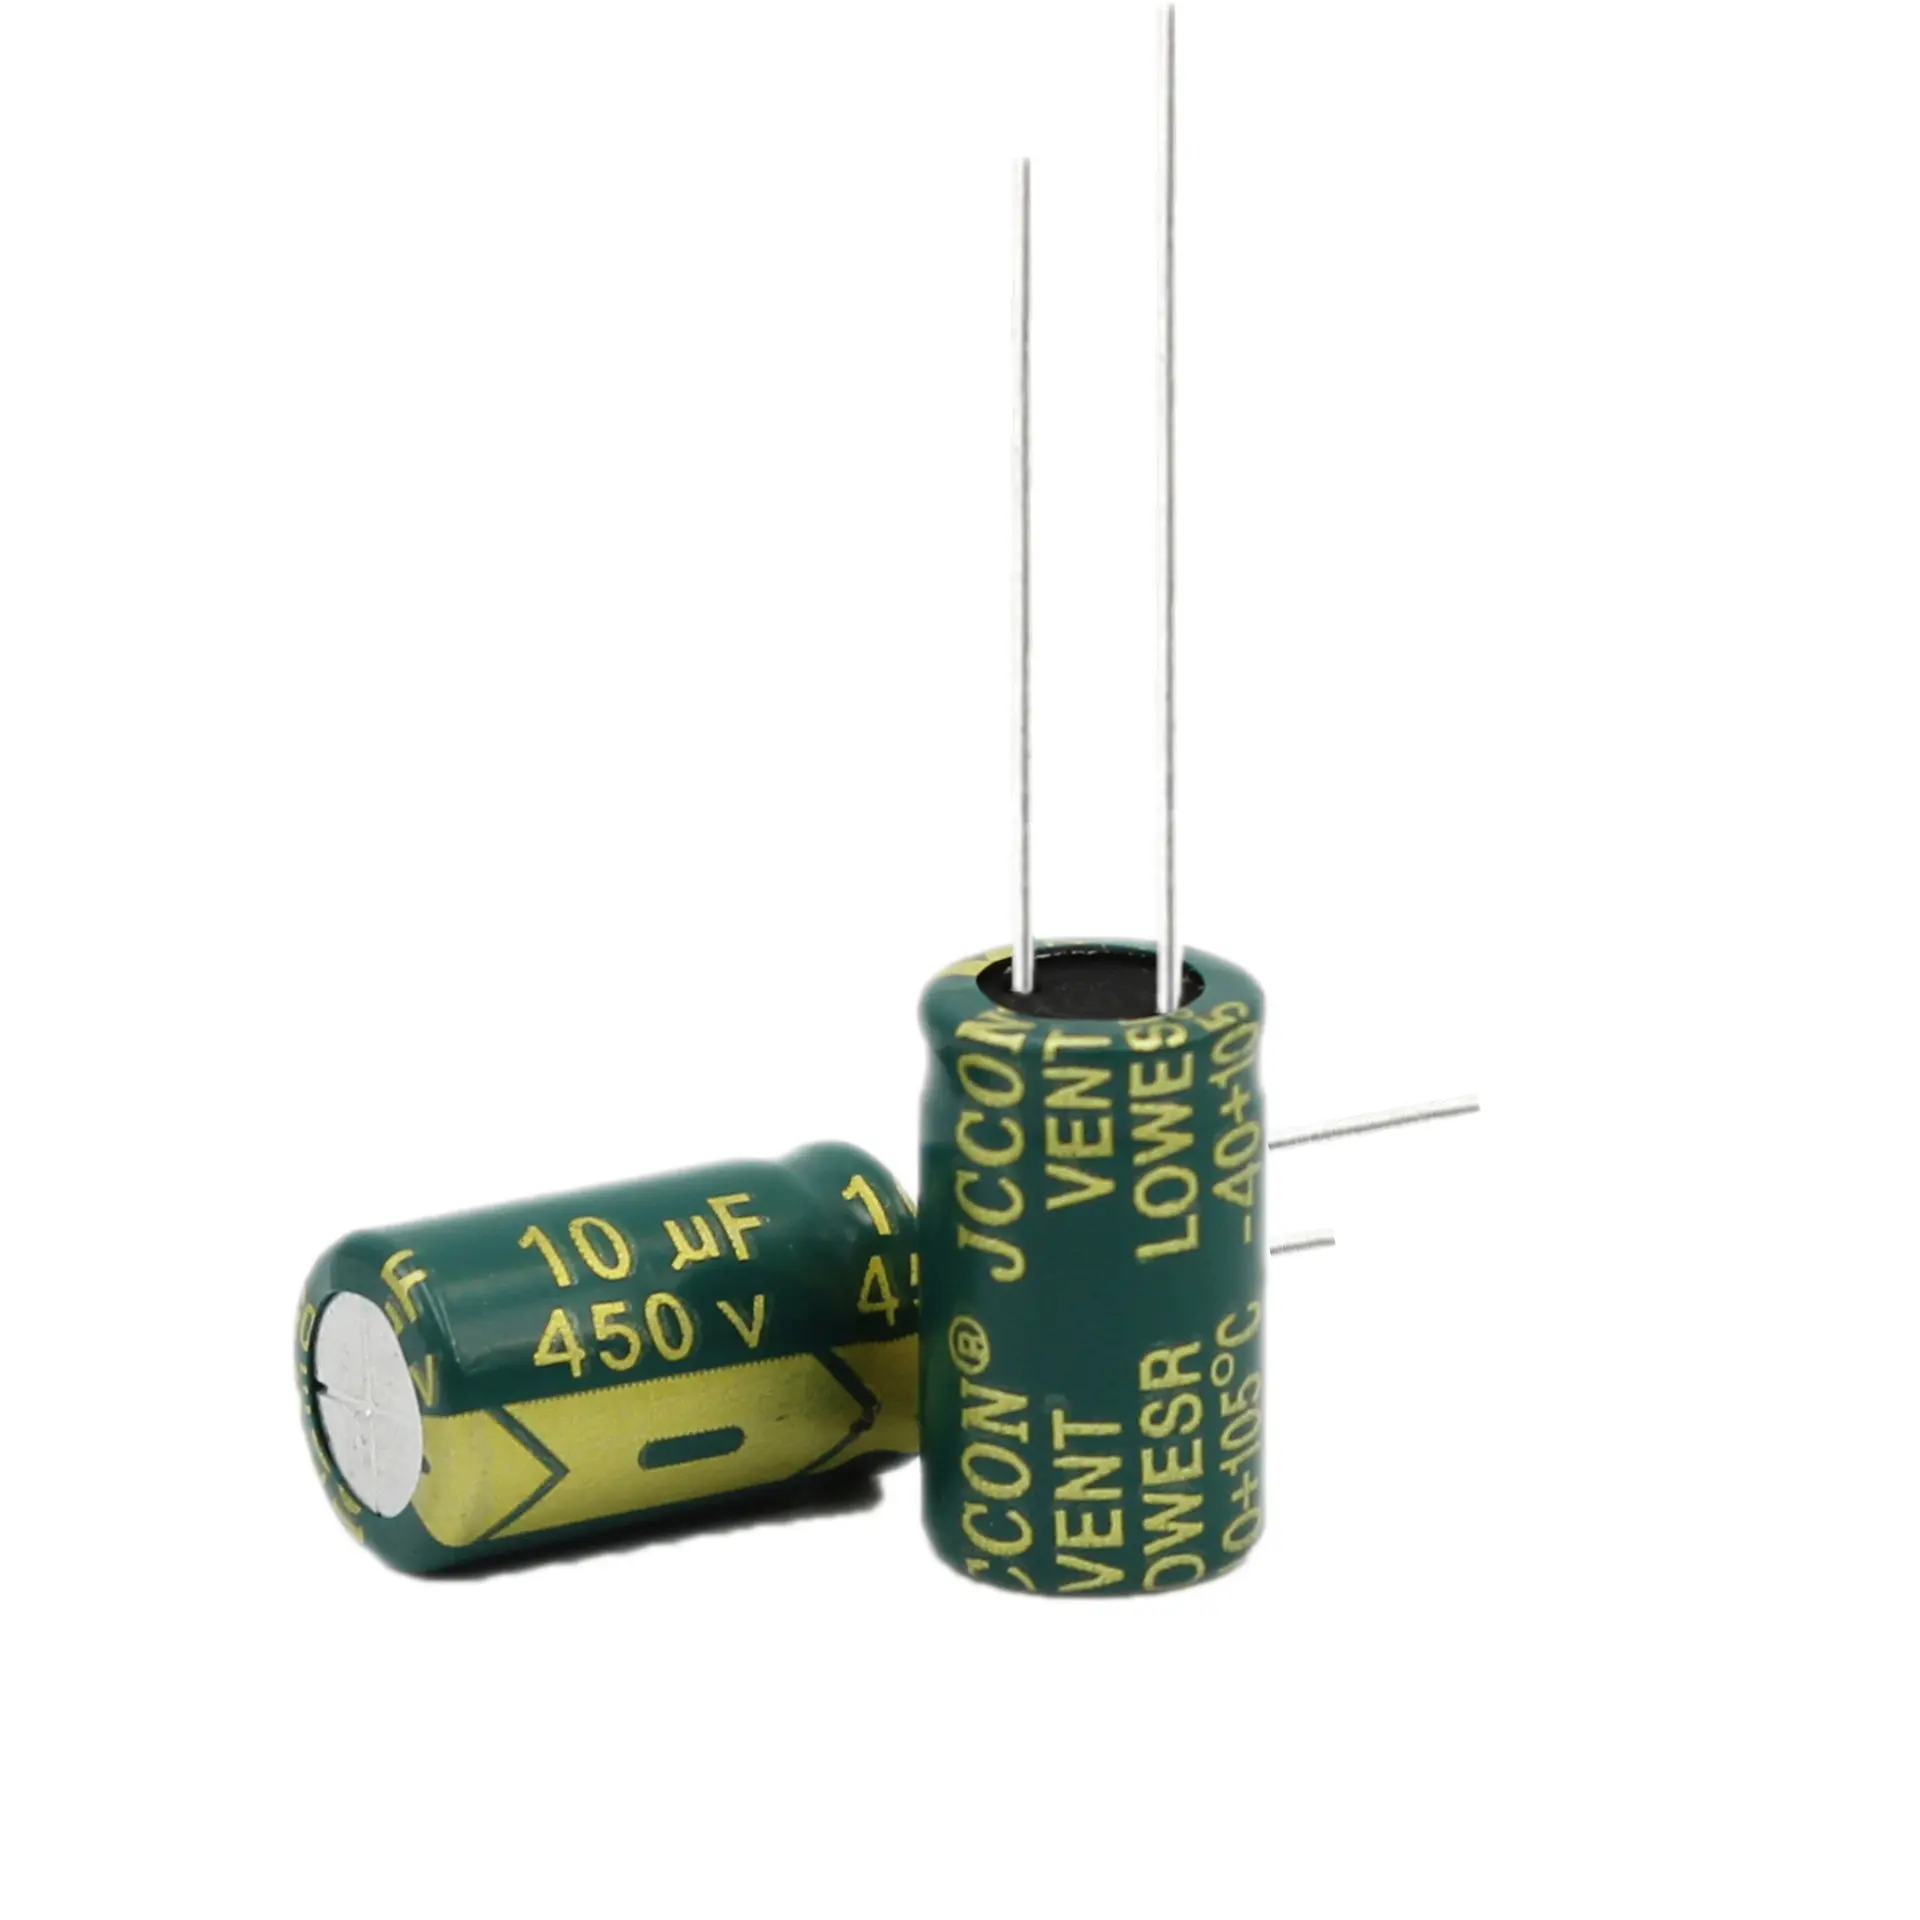 Haut-parleurs système audio condensateurs électrolytiques sonores 450V10UF adaptateur onduleur condensateur électrolytique en aluminium 450V 10UF